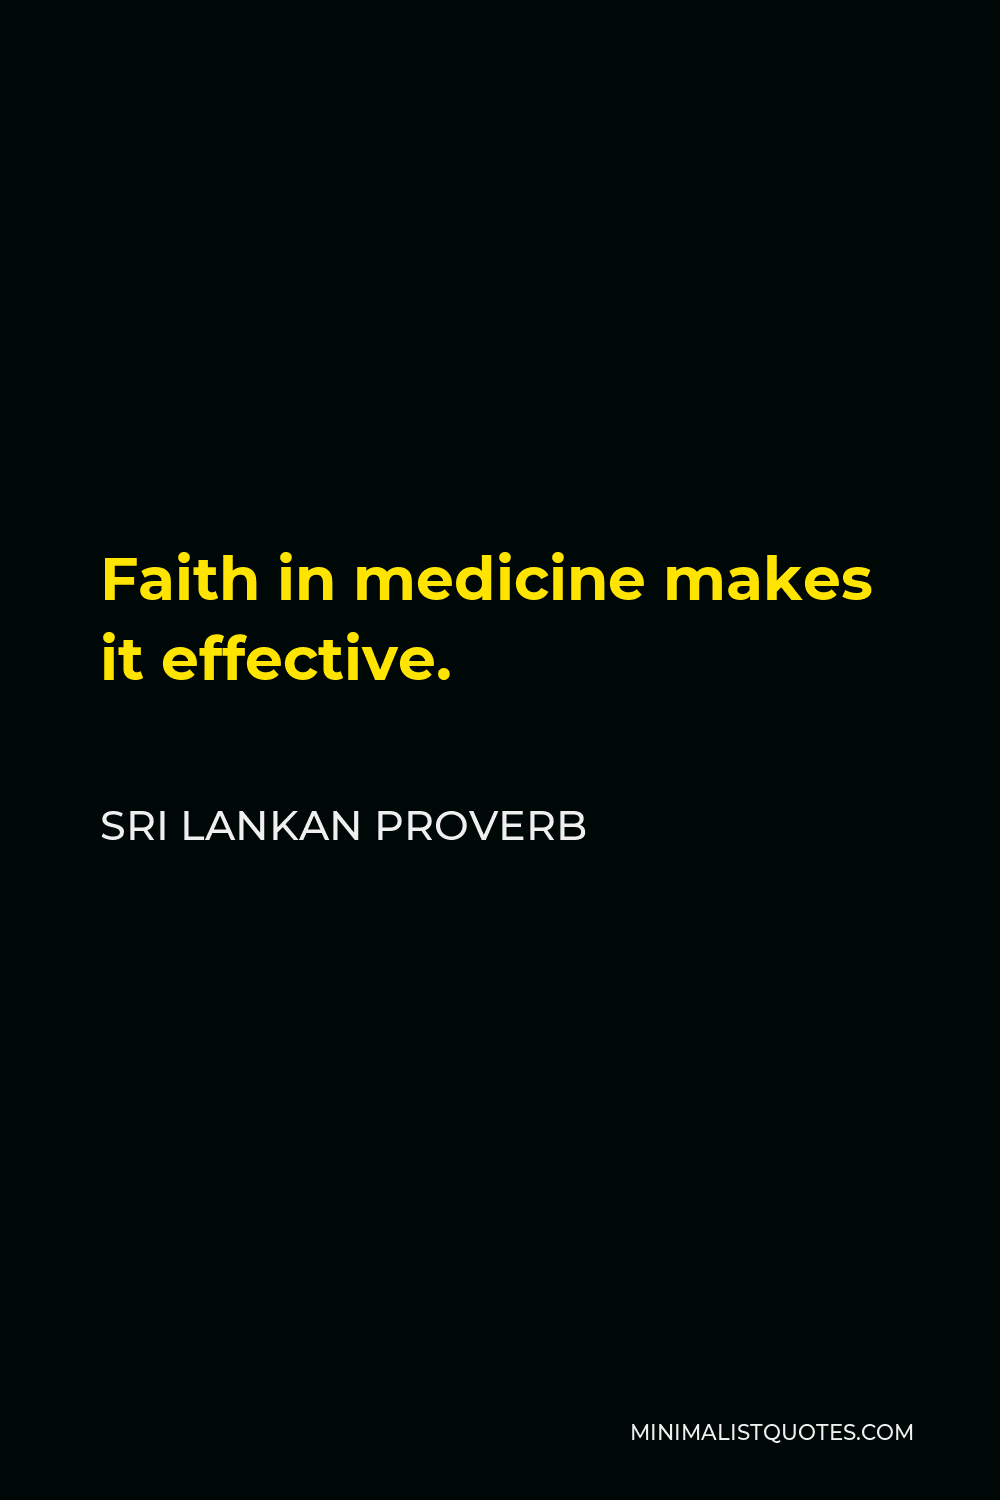 Sri Lankan Proverb Quote - Faith in medicine makes it effective.